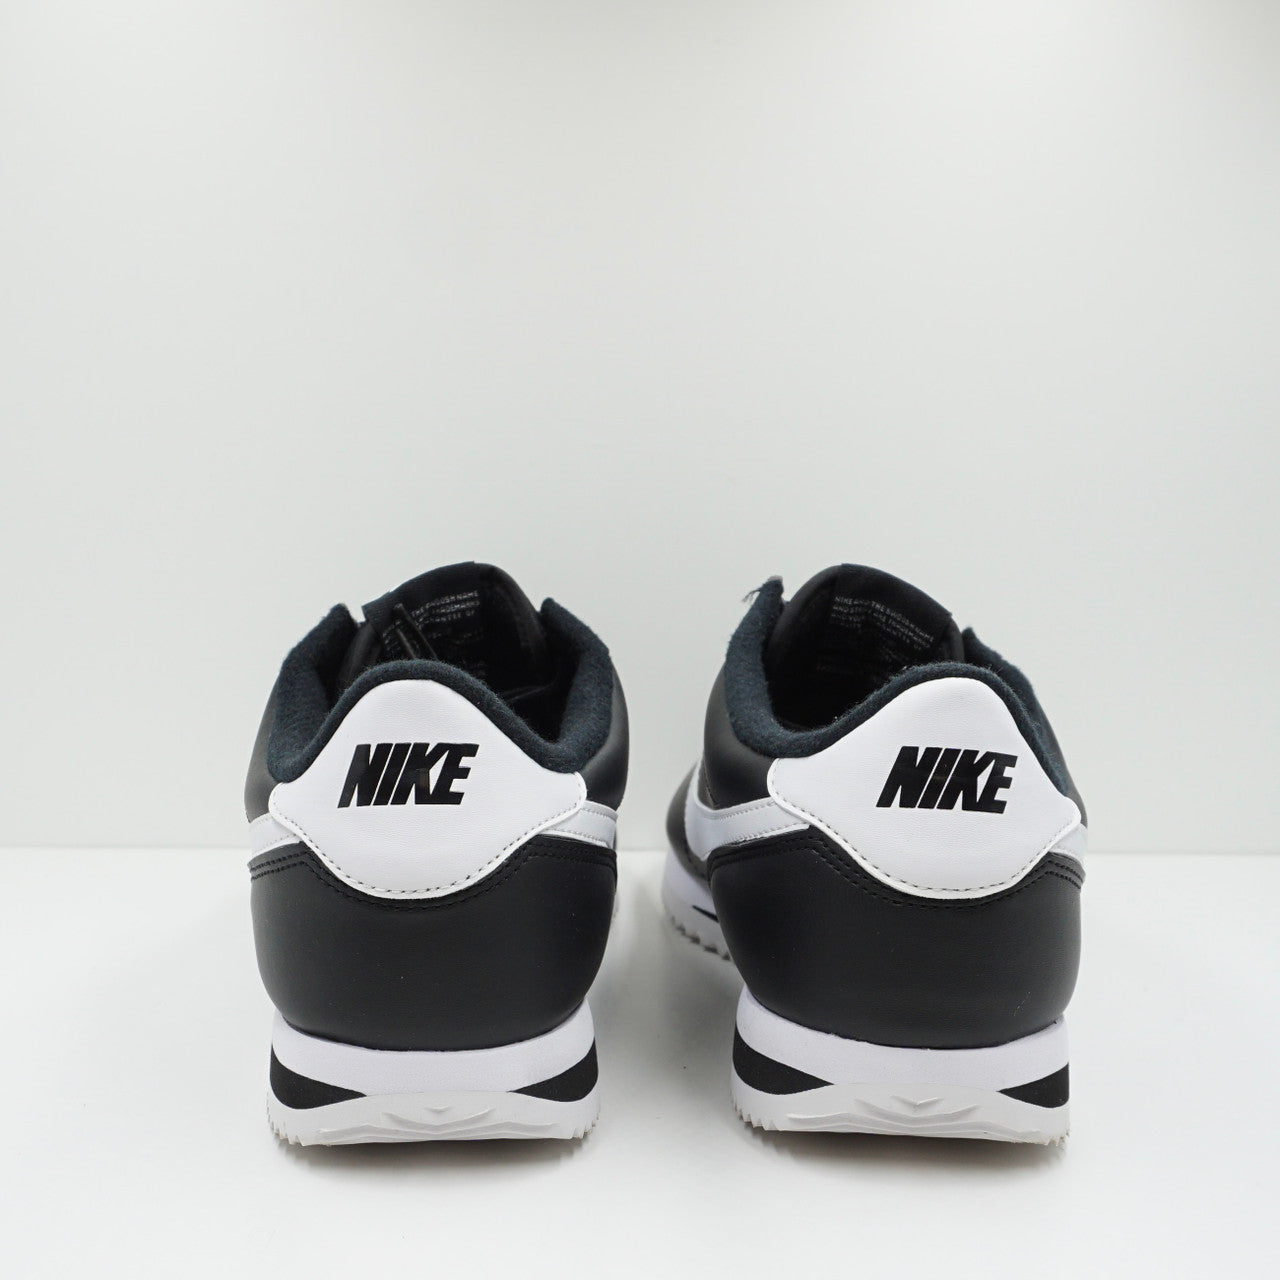 Nike Cortez Basic Black White (2020)